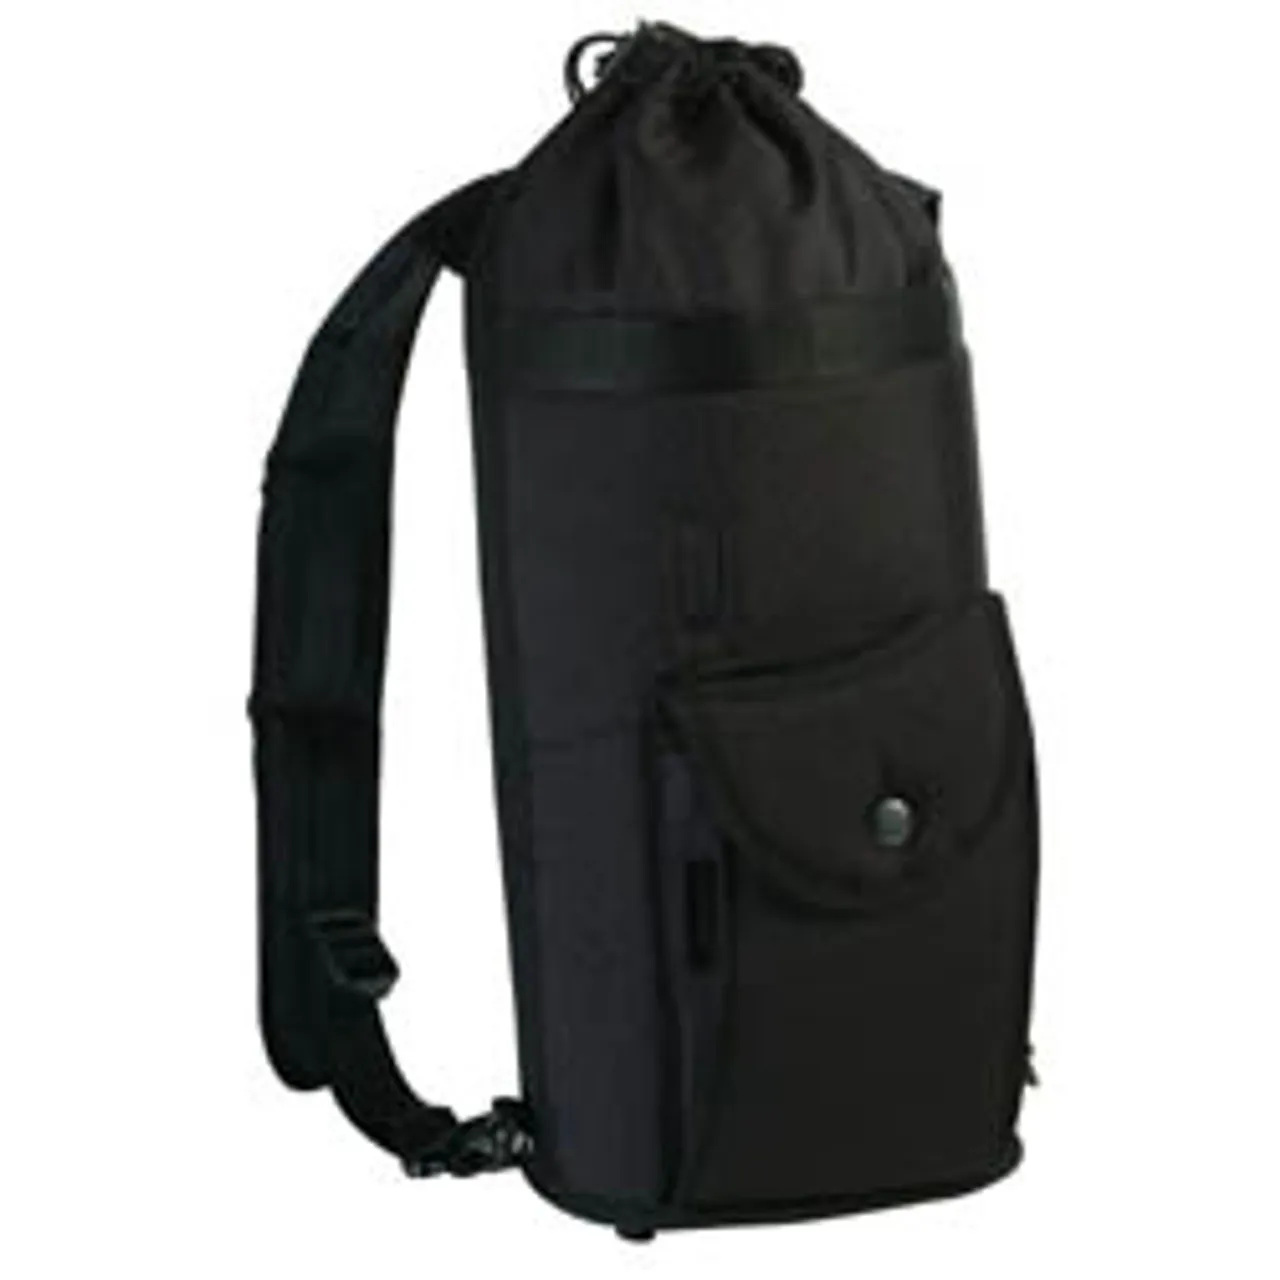 Gemco Medical - CBAG-BPACK - Cylinder Bag, Backpack Style, Fits Up C Cylinder